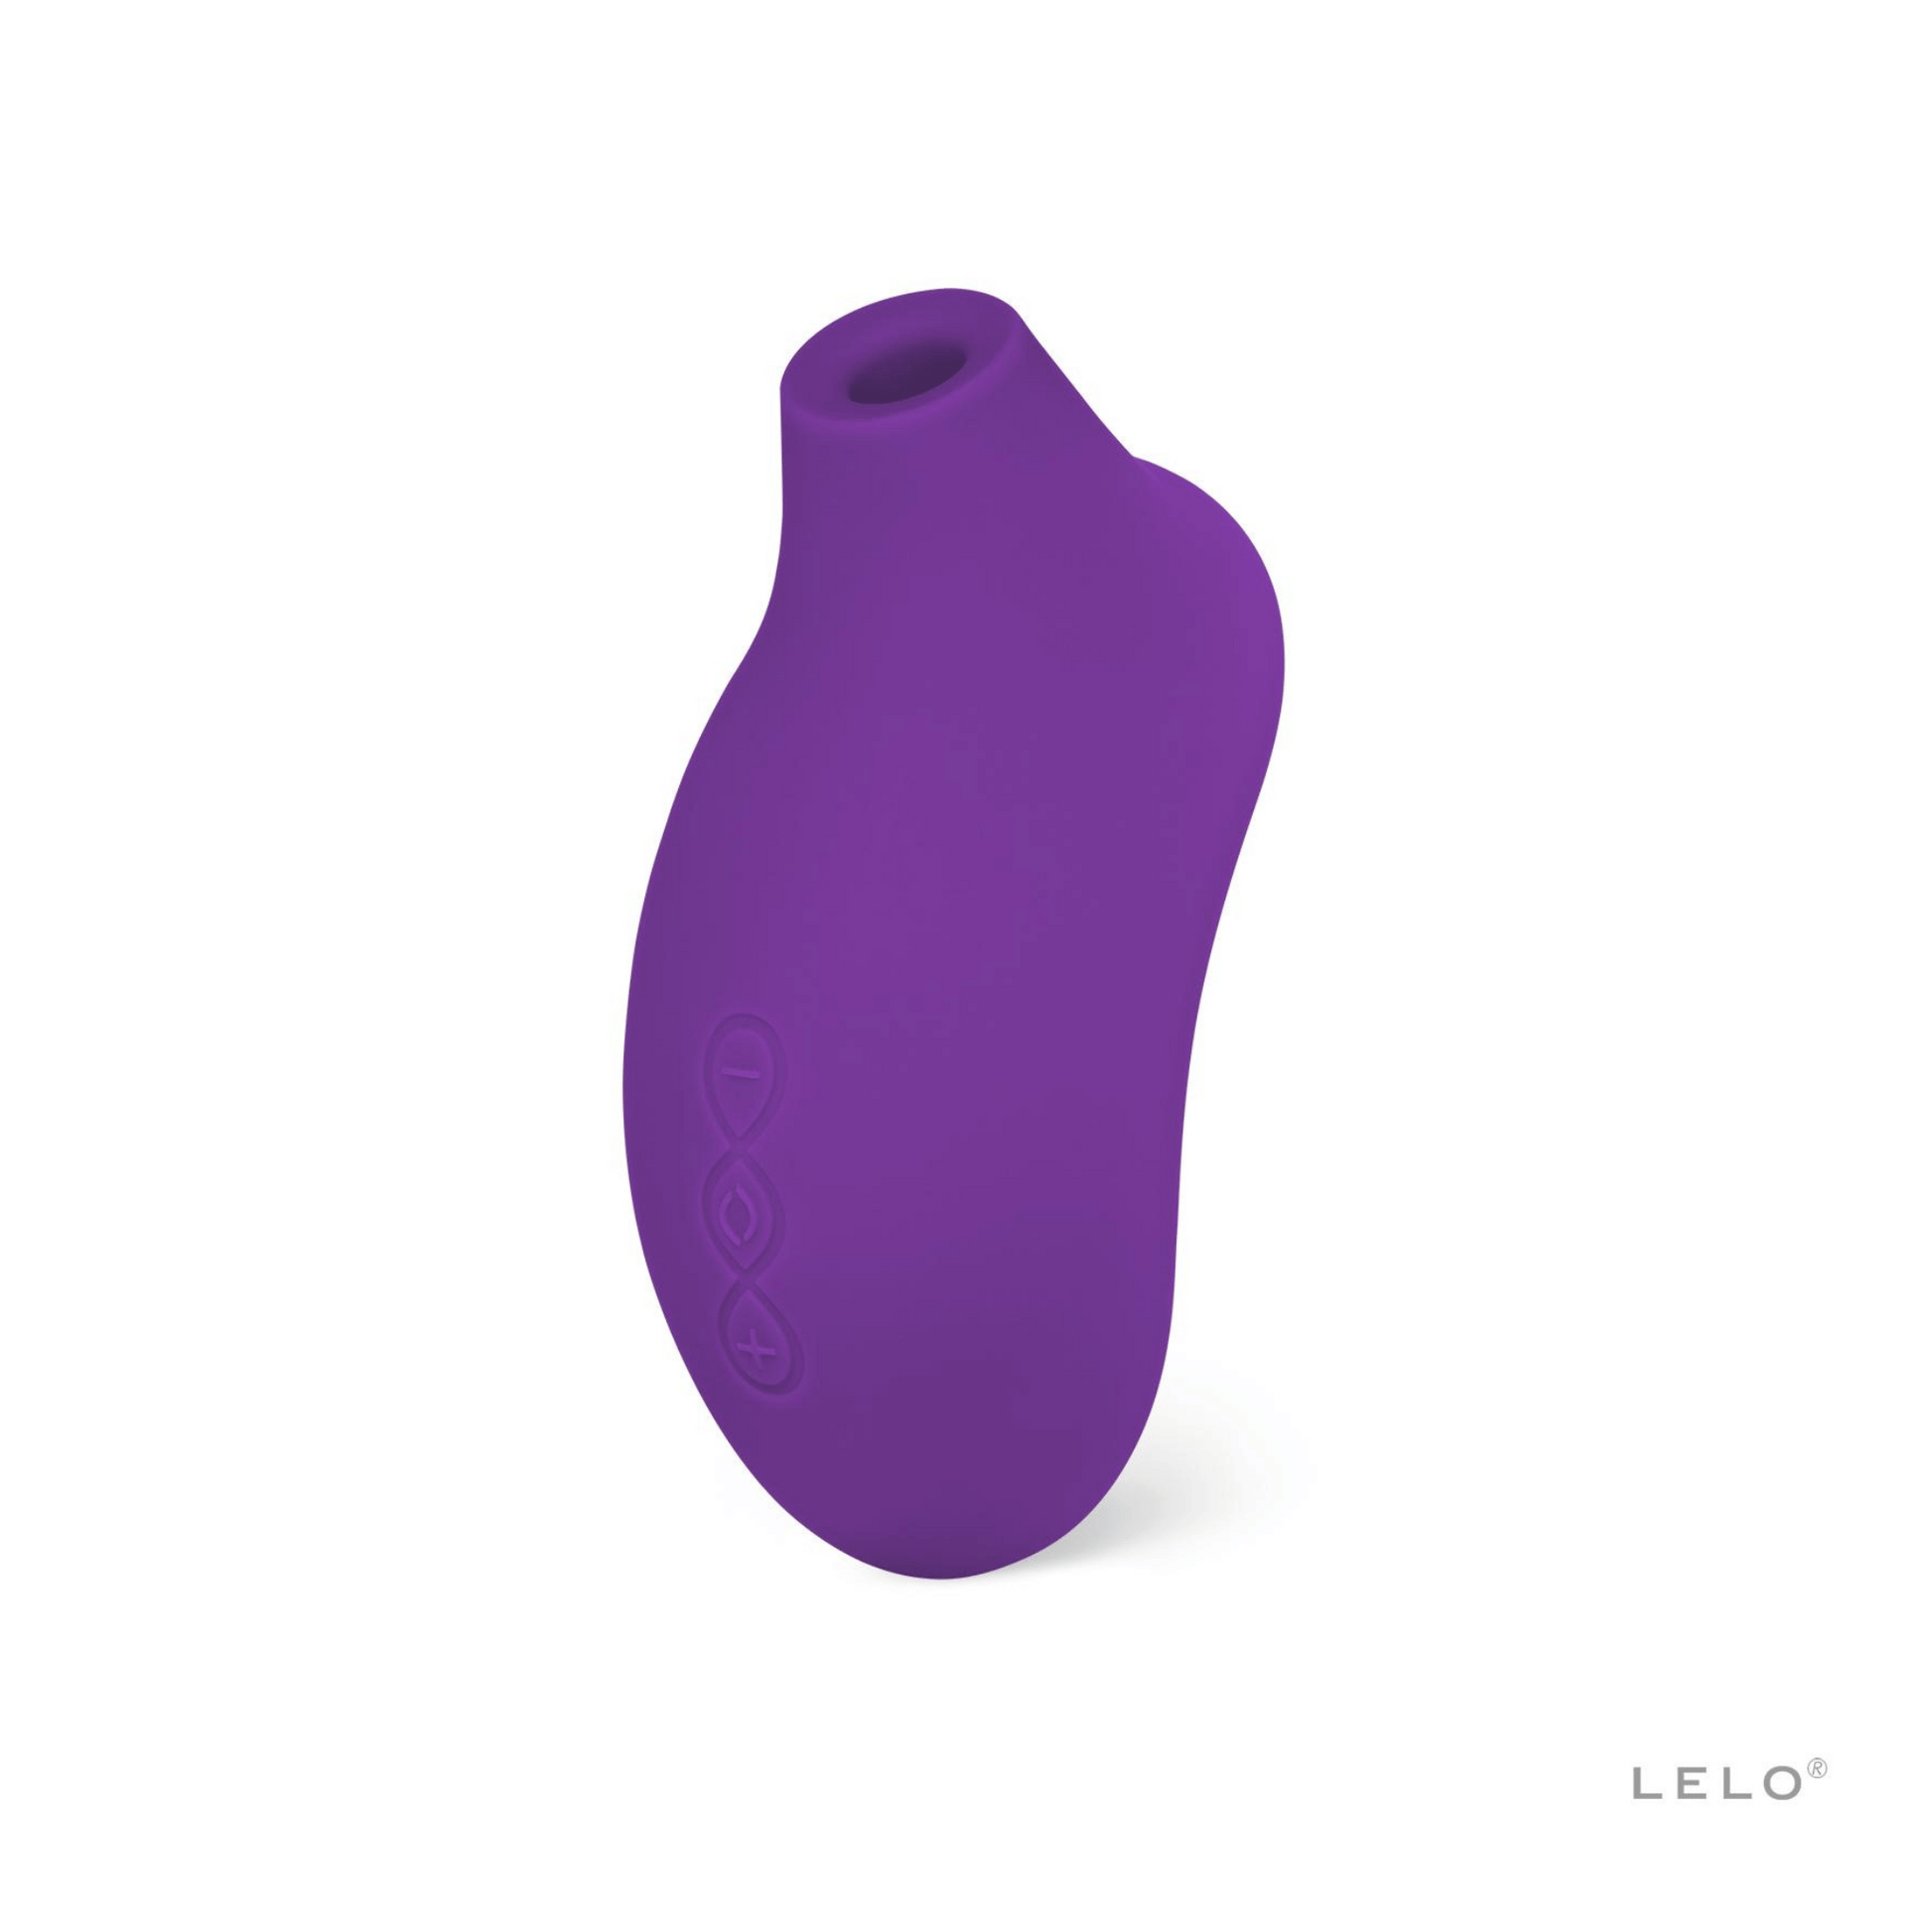 Stimulateur clitoridien Sona 2 de Lelo en violet, outil de bien-être intime, à trouver sur OhMyGodz.fr pour des moments de plaisir exclusifs